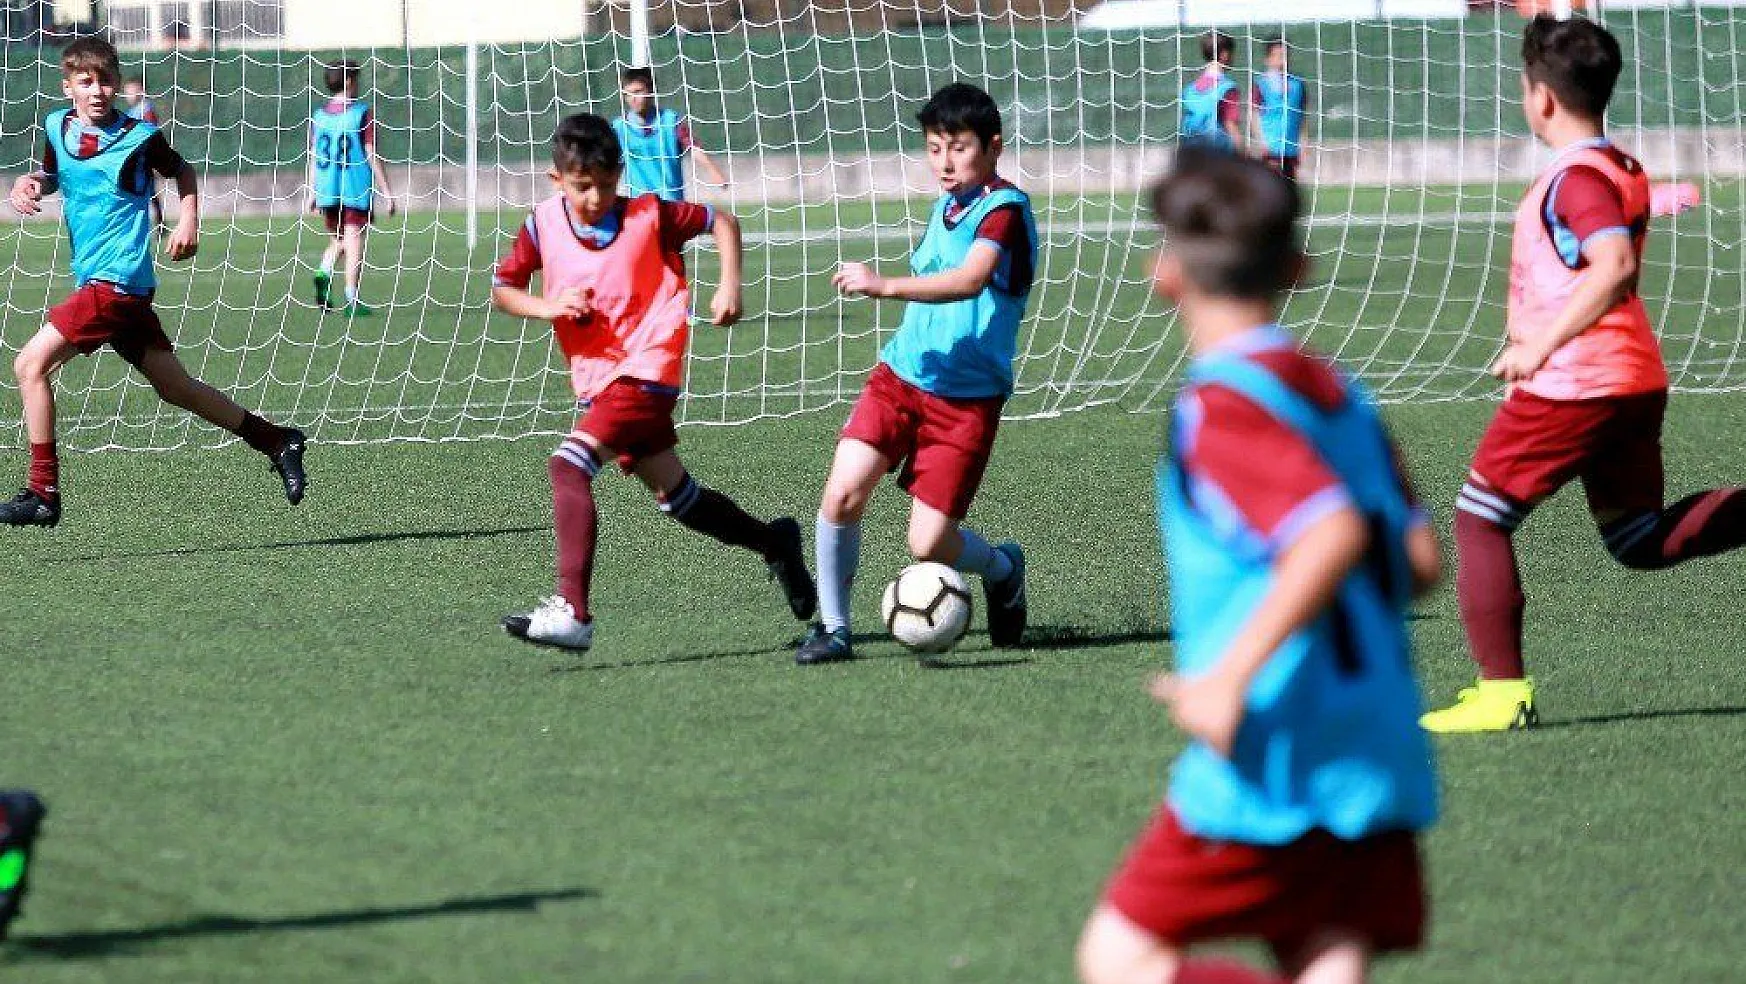 Trabzonspor, Muğla'da futbol okulu açıyor